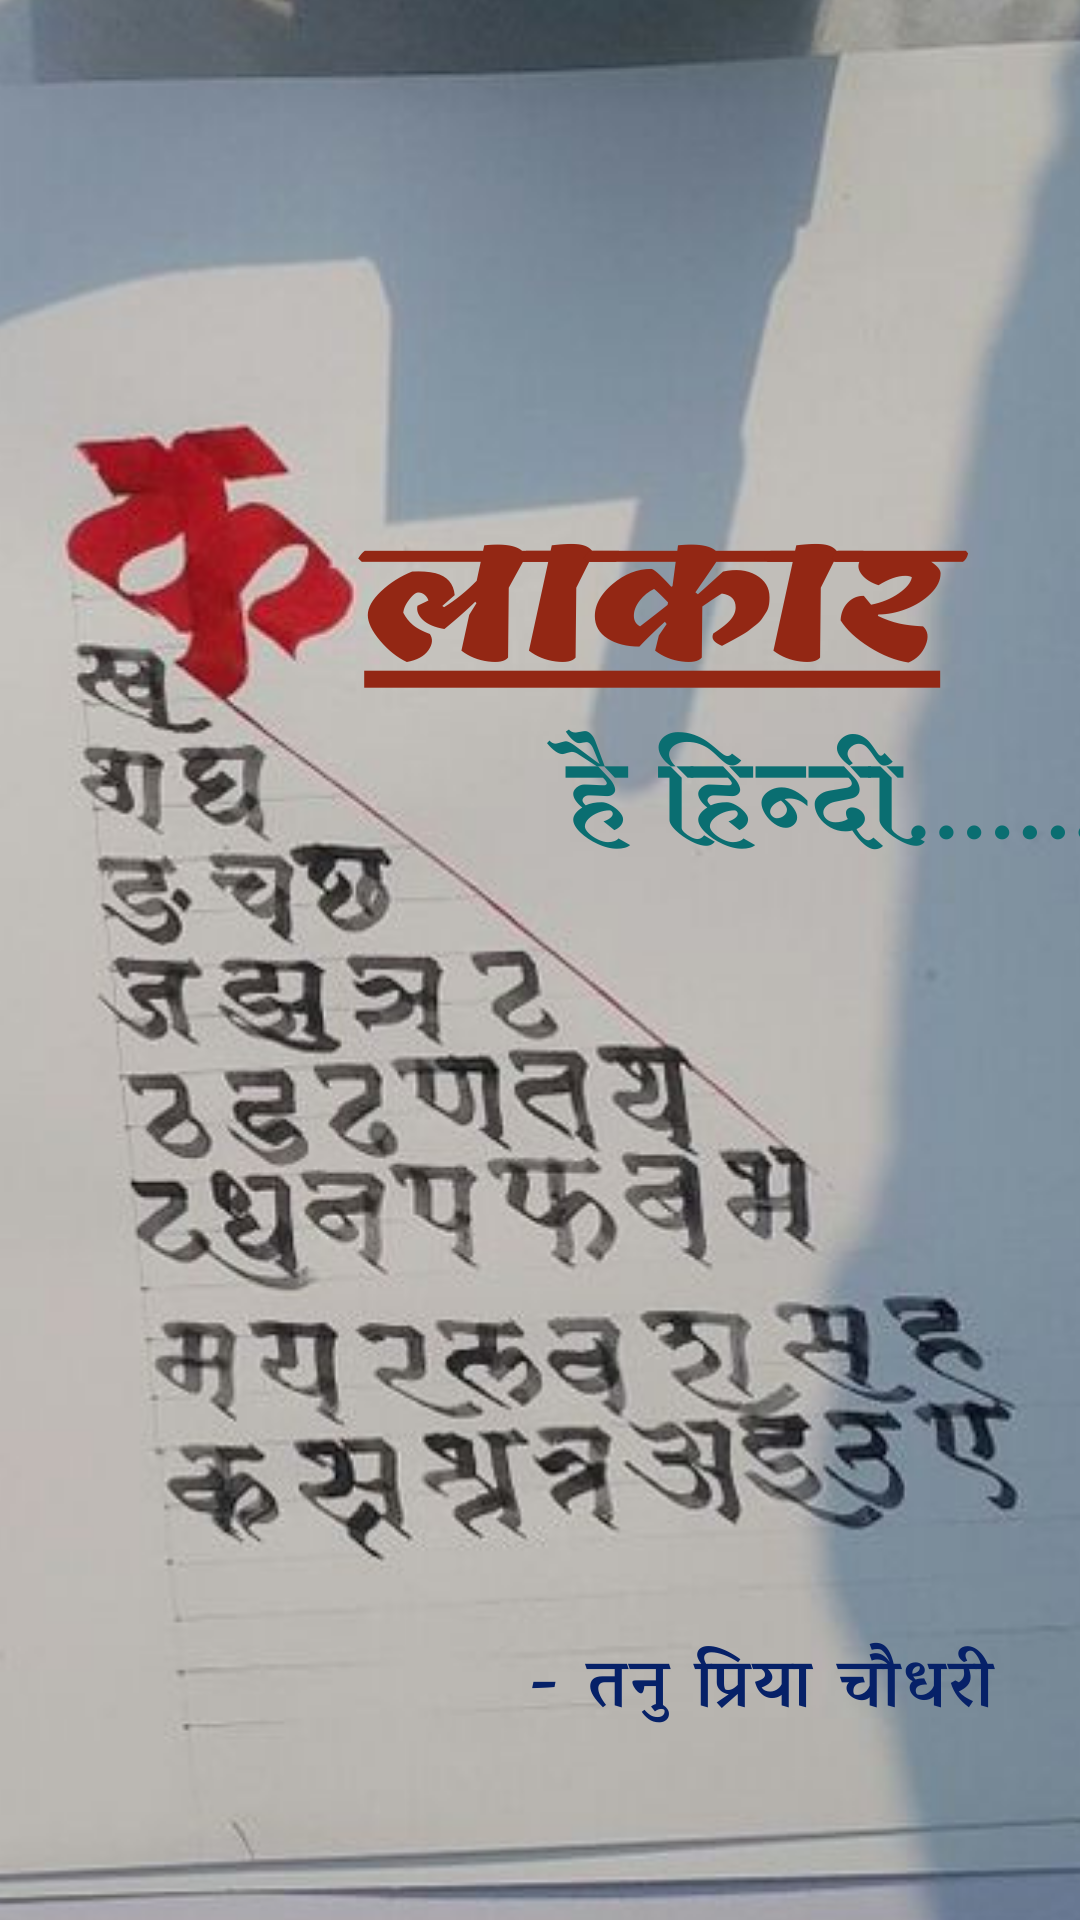 कलाकार है हिन्दी's image